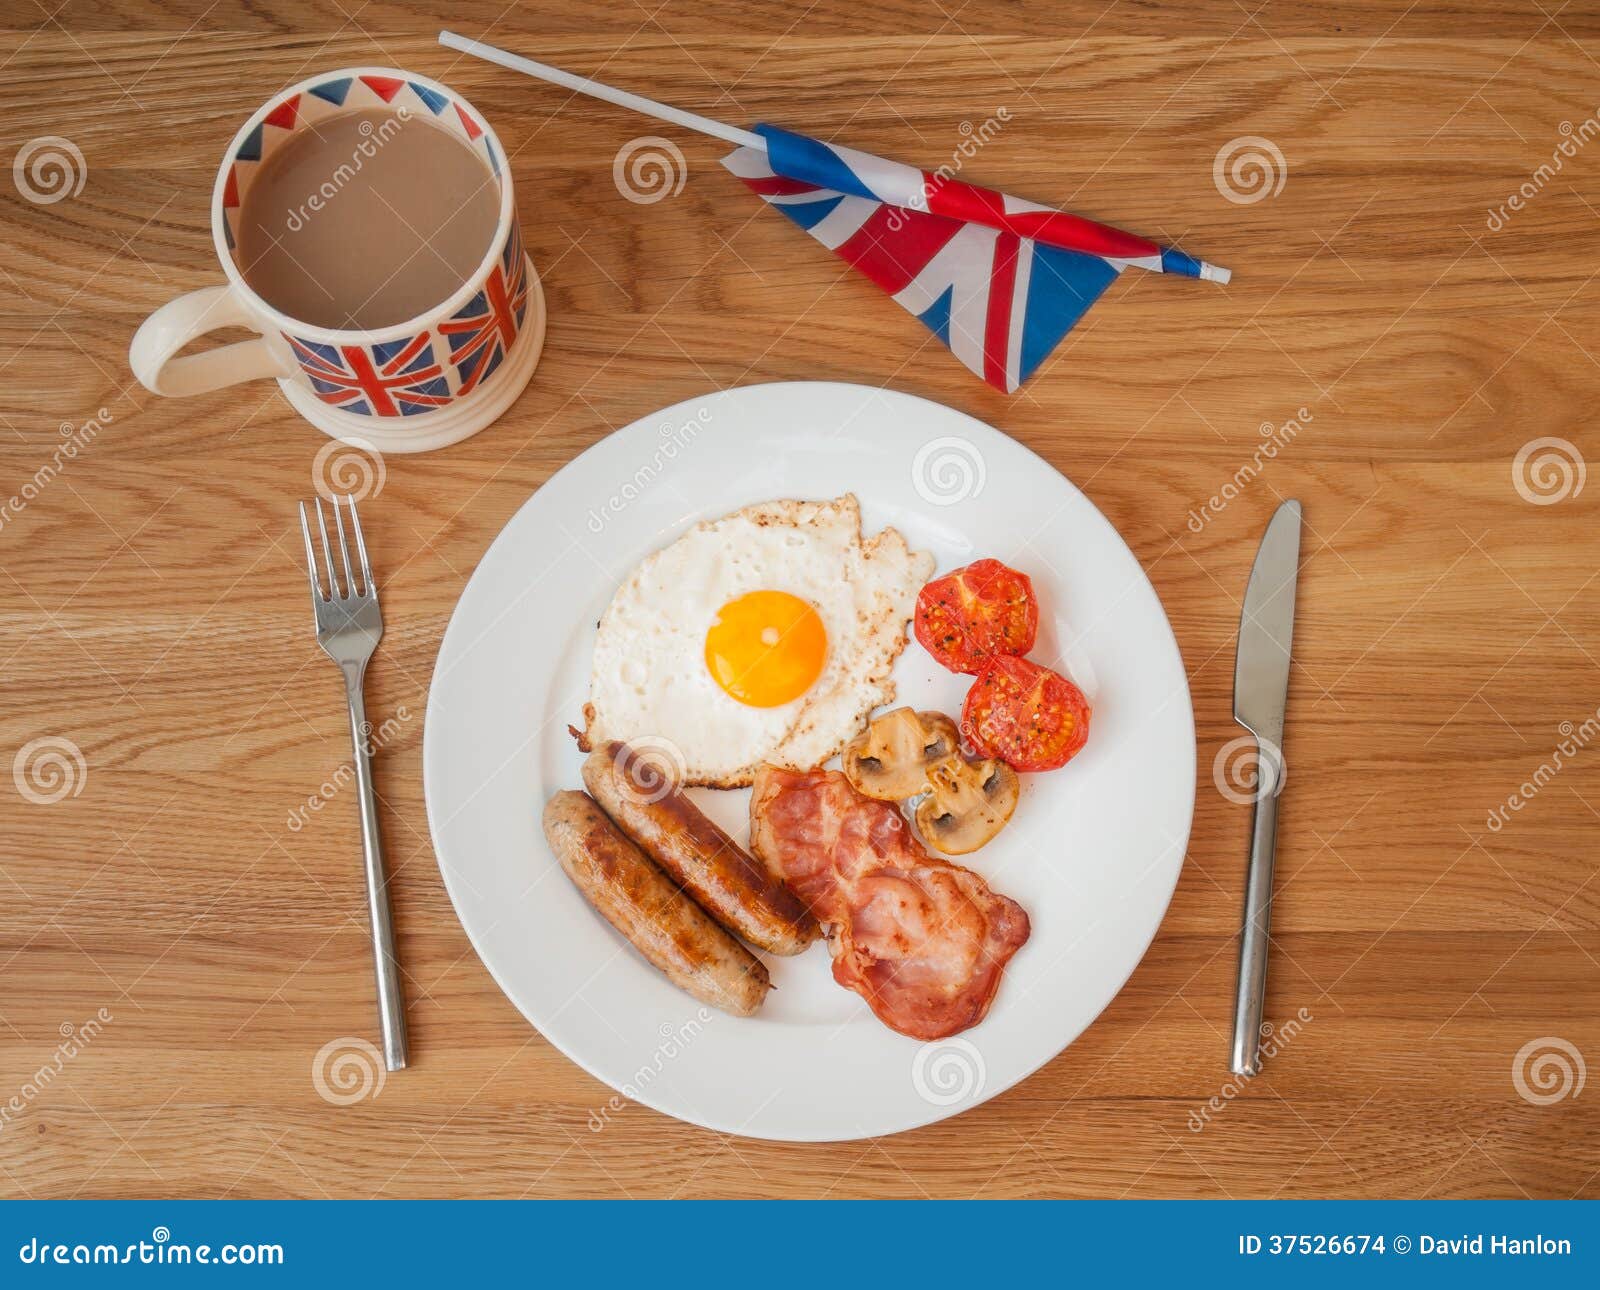 Идти завтракать на английском. Приемы пищи в Британии. Приемы пищи у англичан. З приема пищи в Великобритании. Английская кухня на фоне флага.